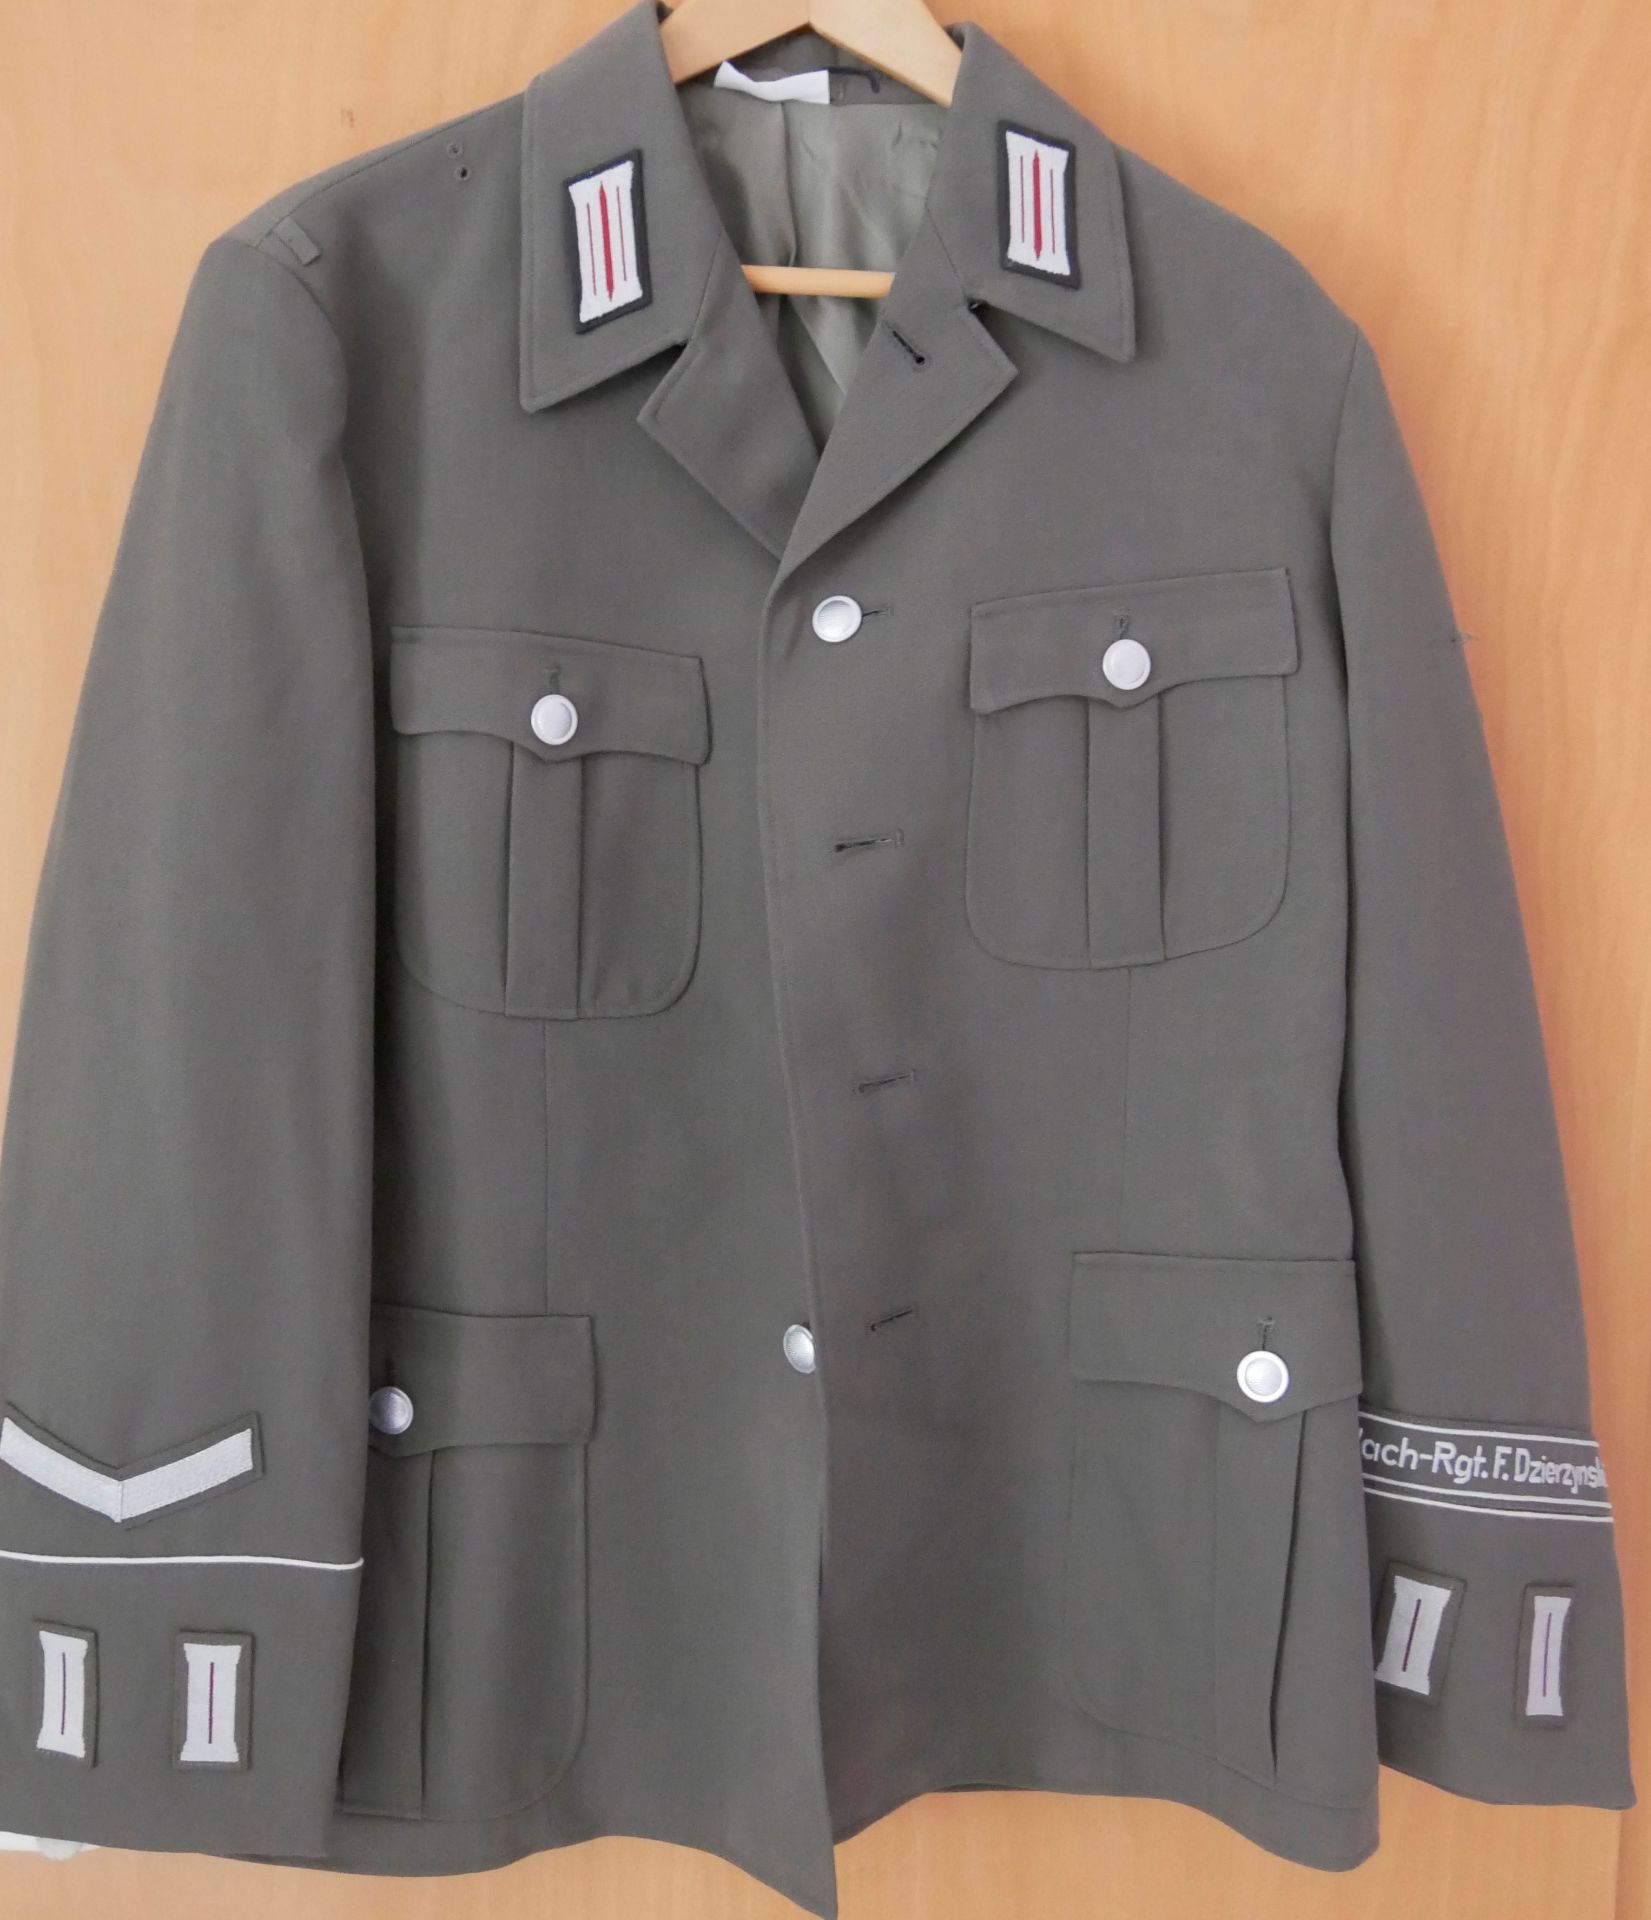 Aus Sammelauflösung! DDR Uniform Jacke mit Effekten, Wach-Rgt. Gr. 52, sehr guter Zustand. Bitte